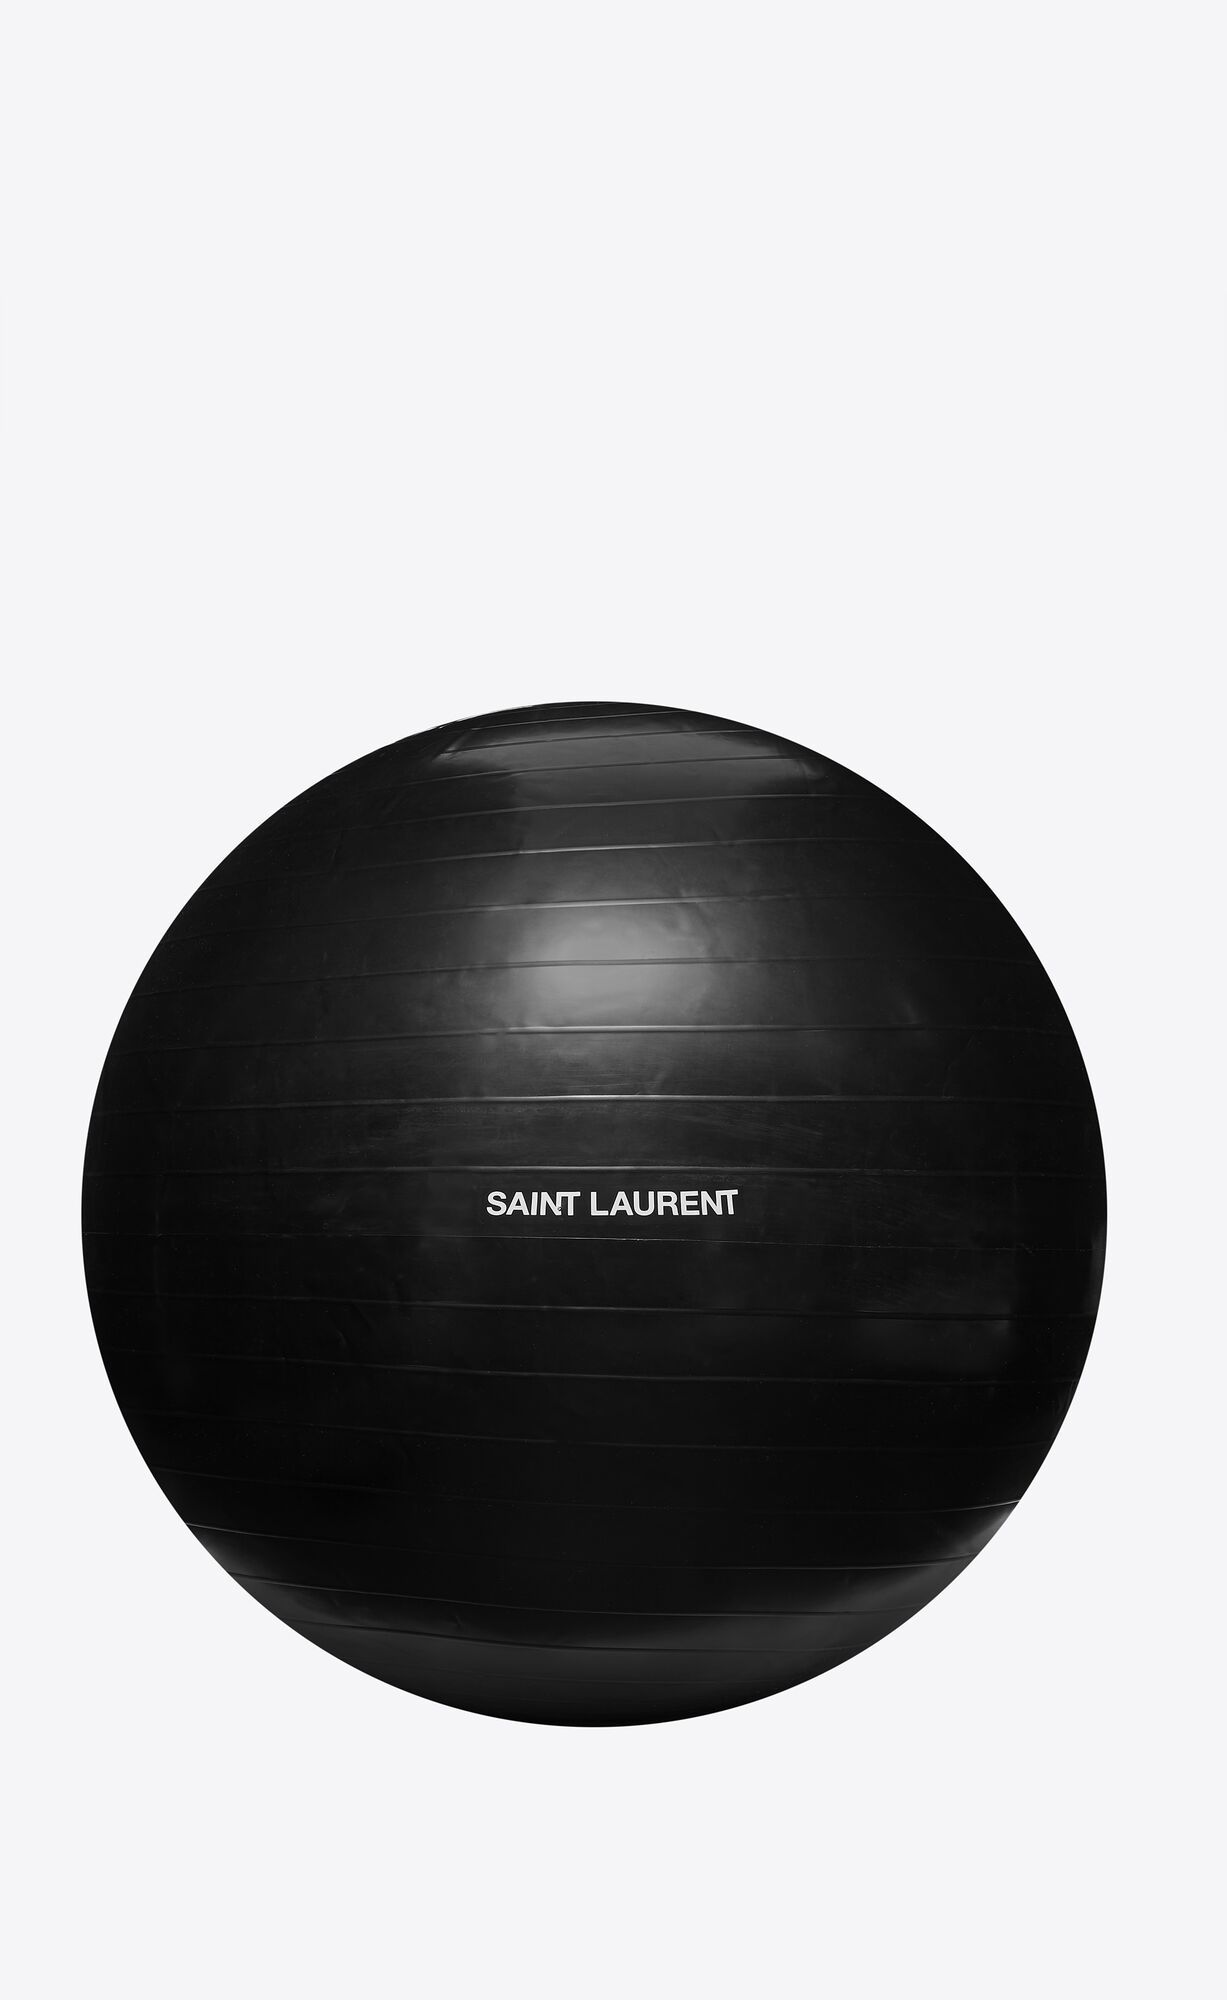 saint laurent yoga ball | Saint Laurent Inc. (Global)